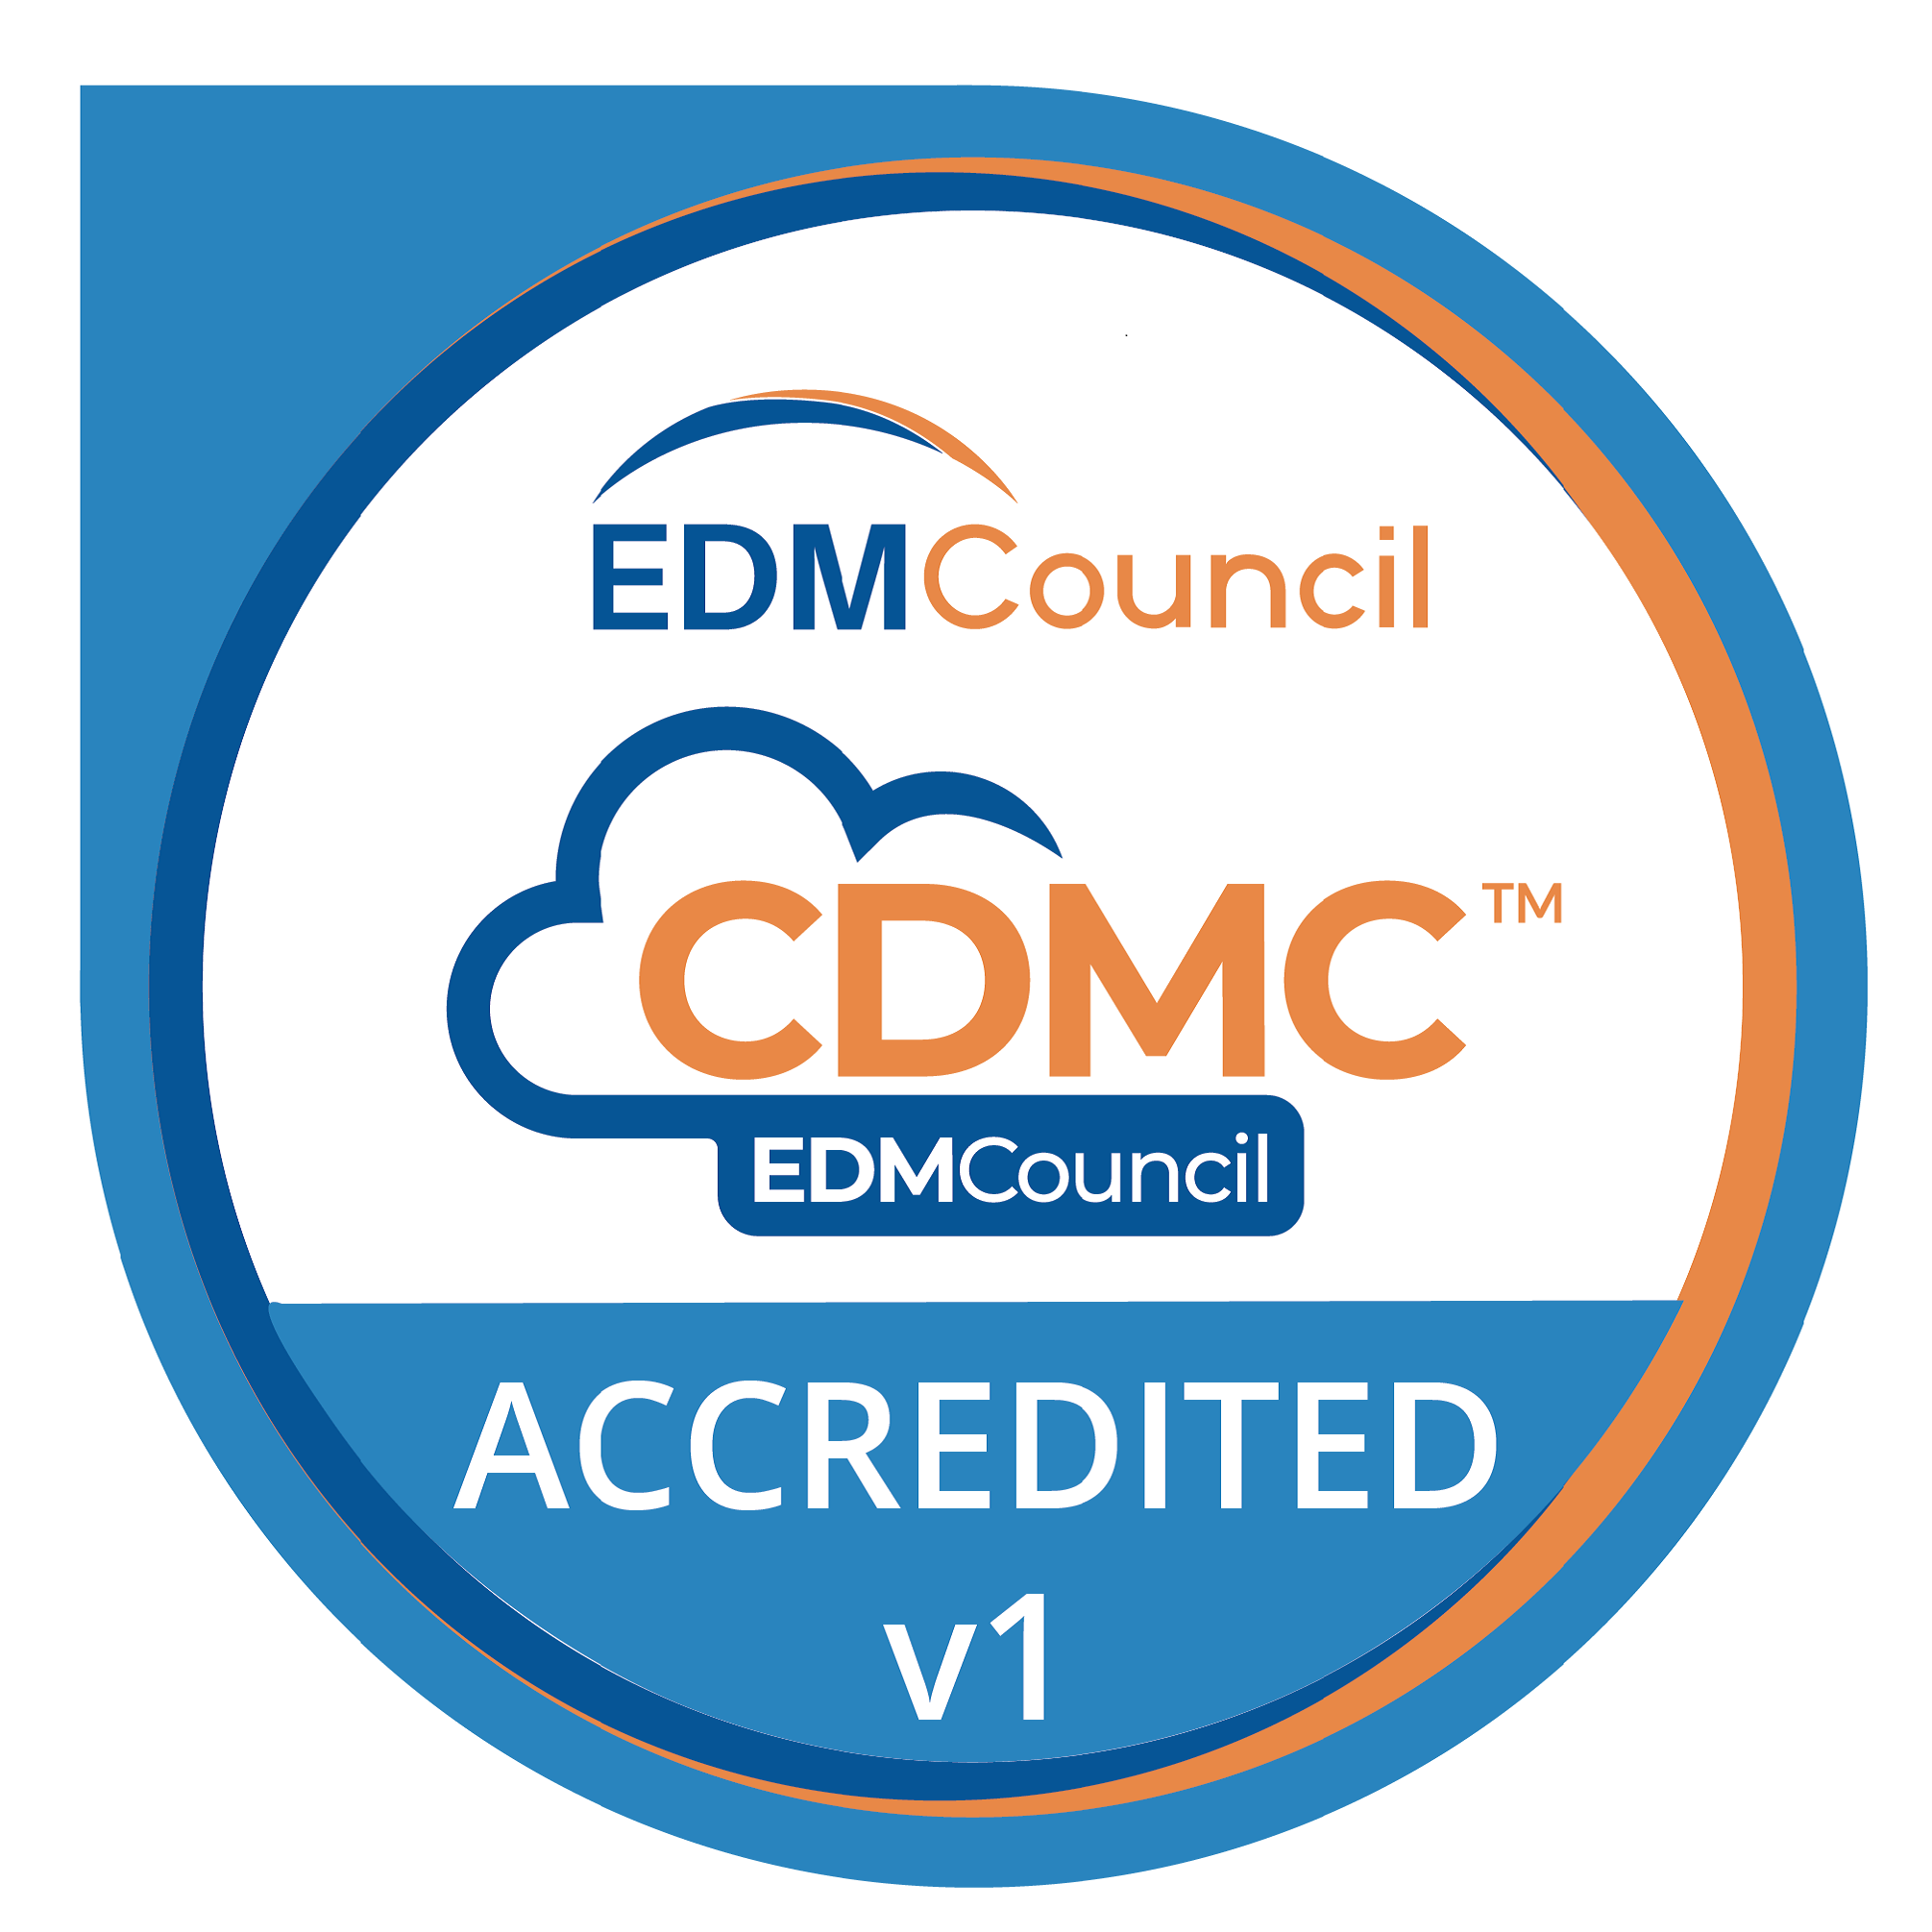 CDMC Accredited V1